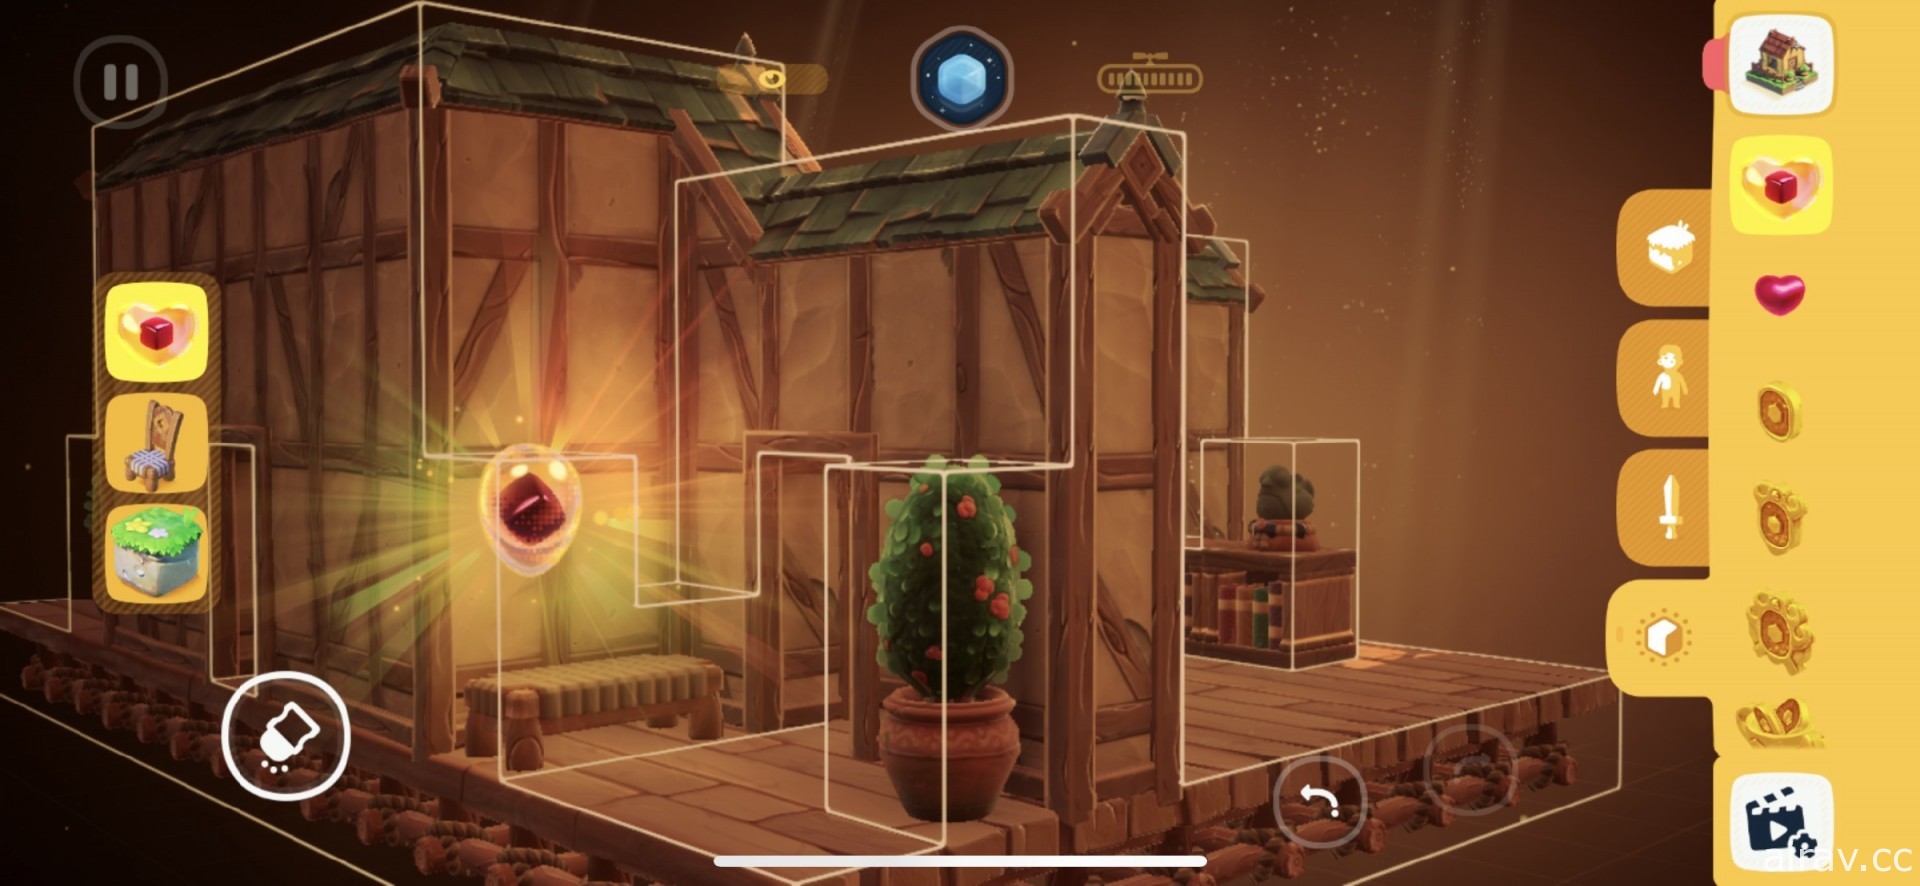 【试玩】益智冒险游戏《Wonderbox：冒险制作者》创造充满个人风格的方盒关卡